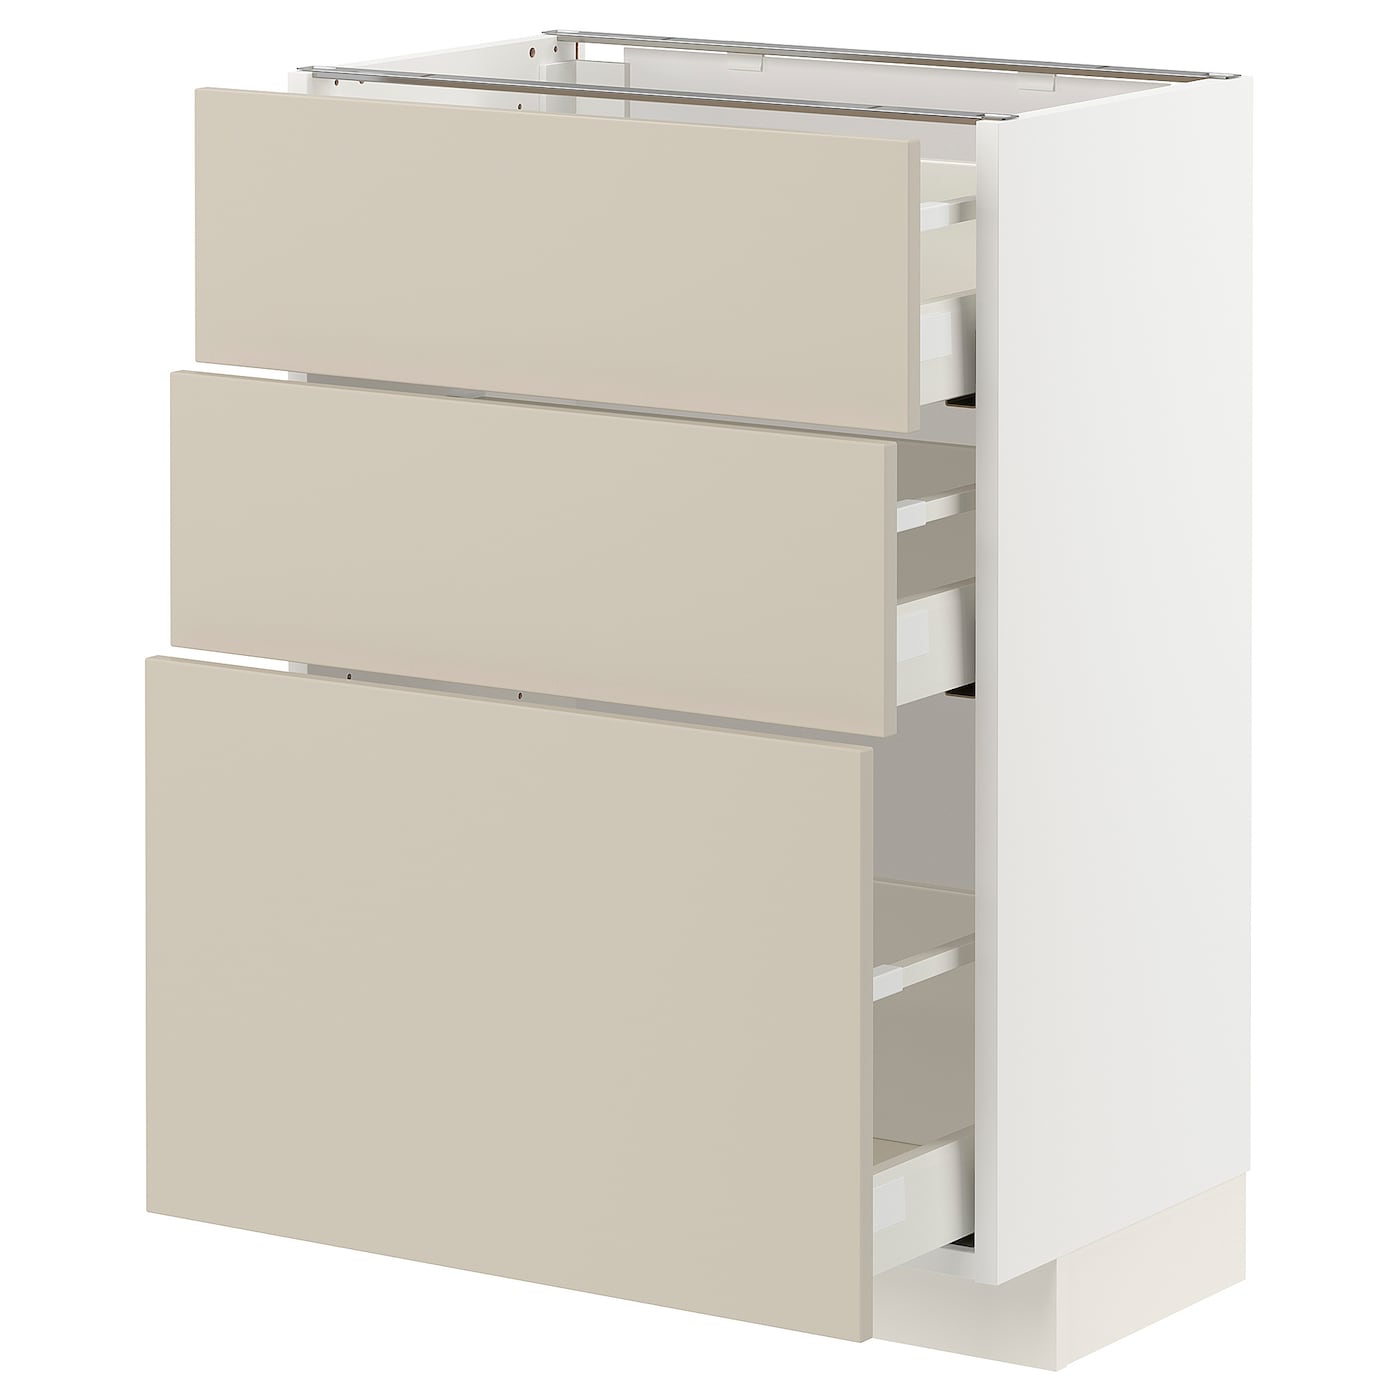 Напольный шкаф - IKEA METOD MAXIMERA, 88x39x60см, белый/бежевый, МЕТОД МАКСИМЕРА ИКЕА